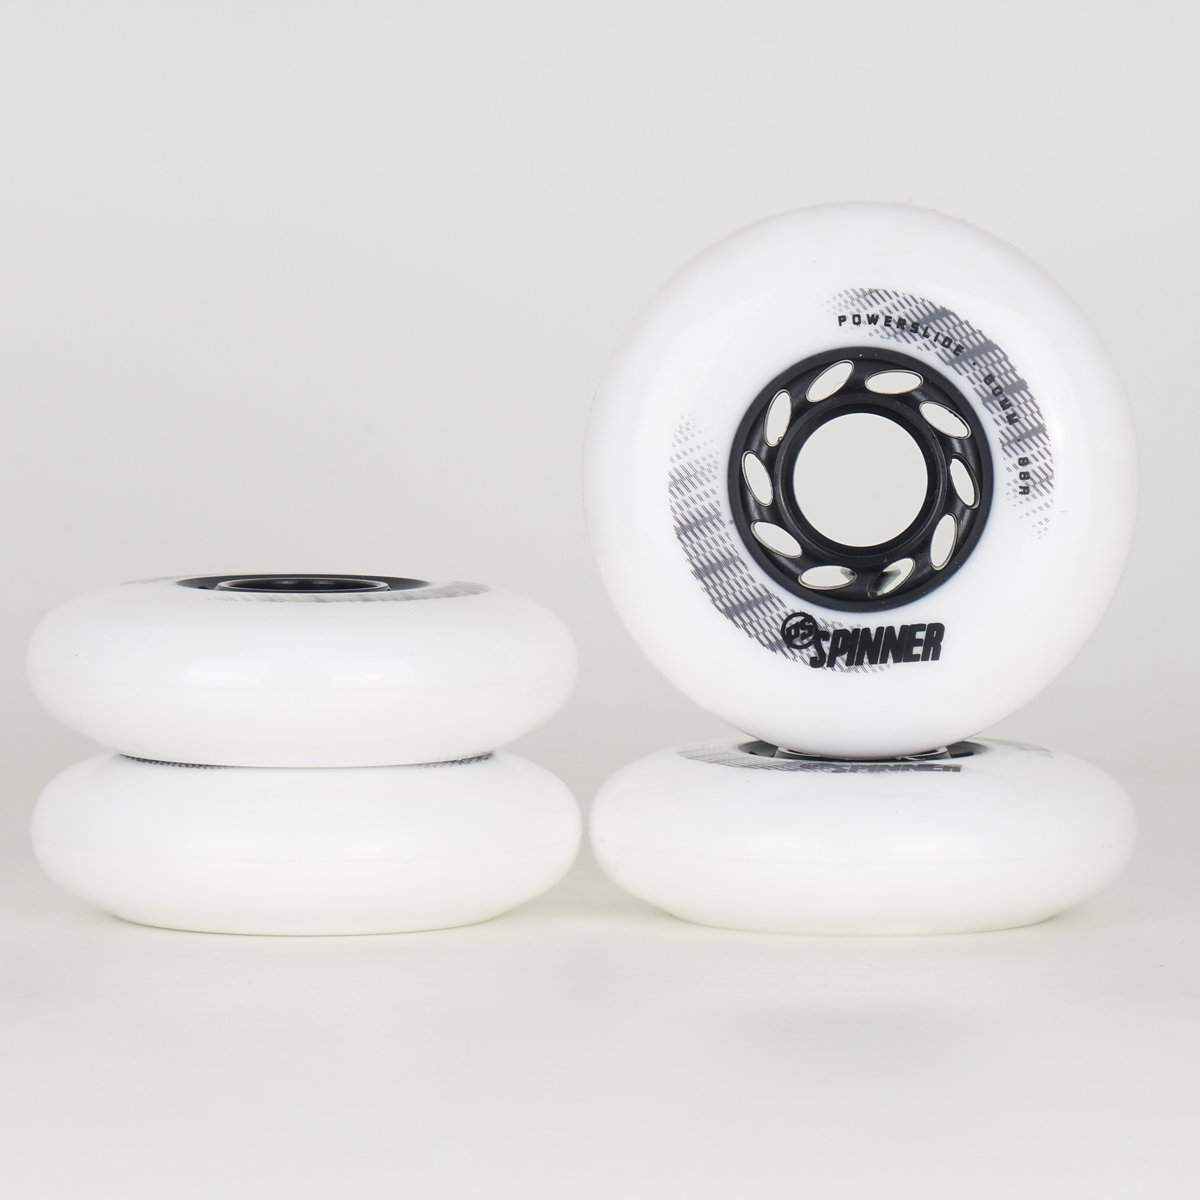 Powerslide Spinner 80mm Wheels - White-Powerslide-80mm,Freeskate / Powerblade,Skate Parts,Wheels,white